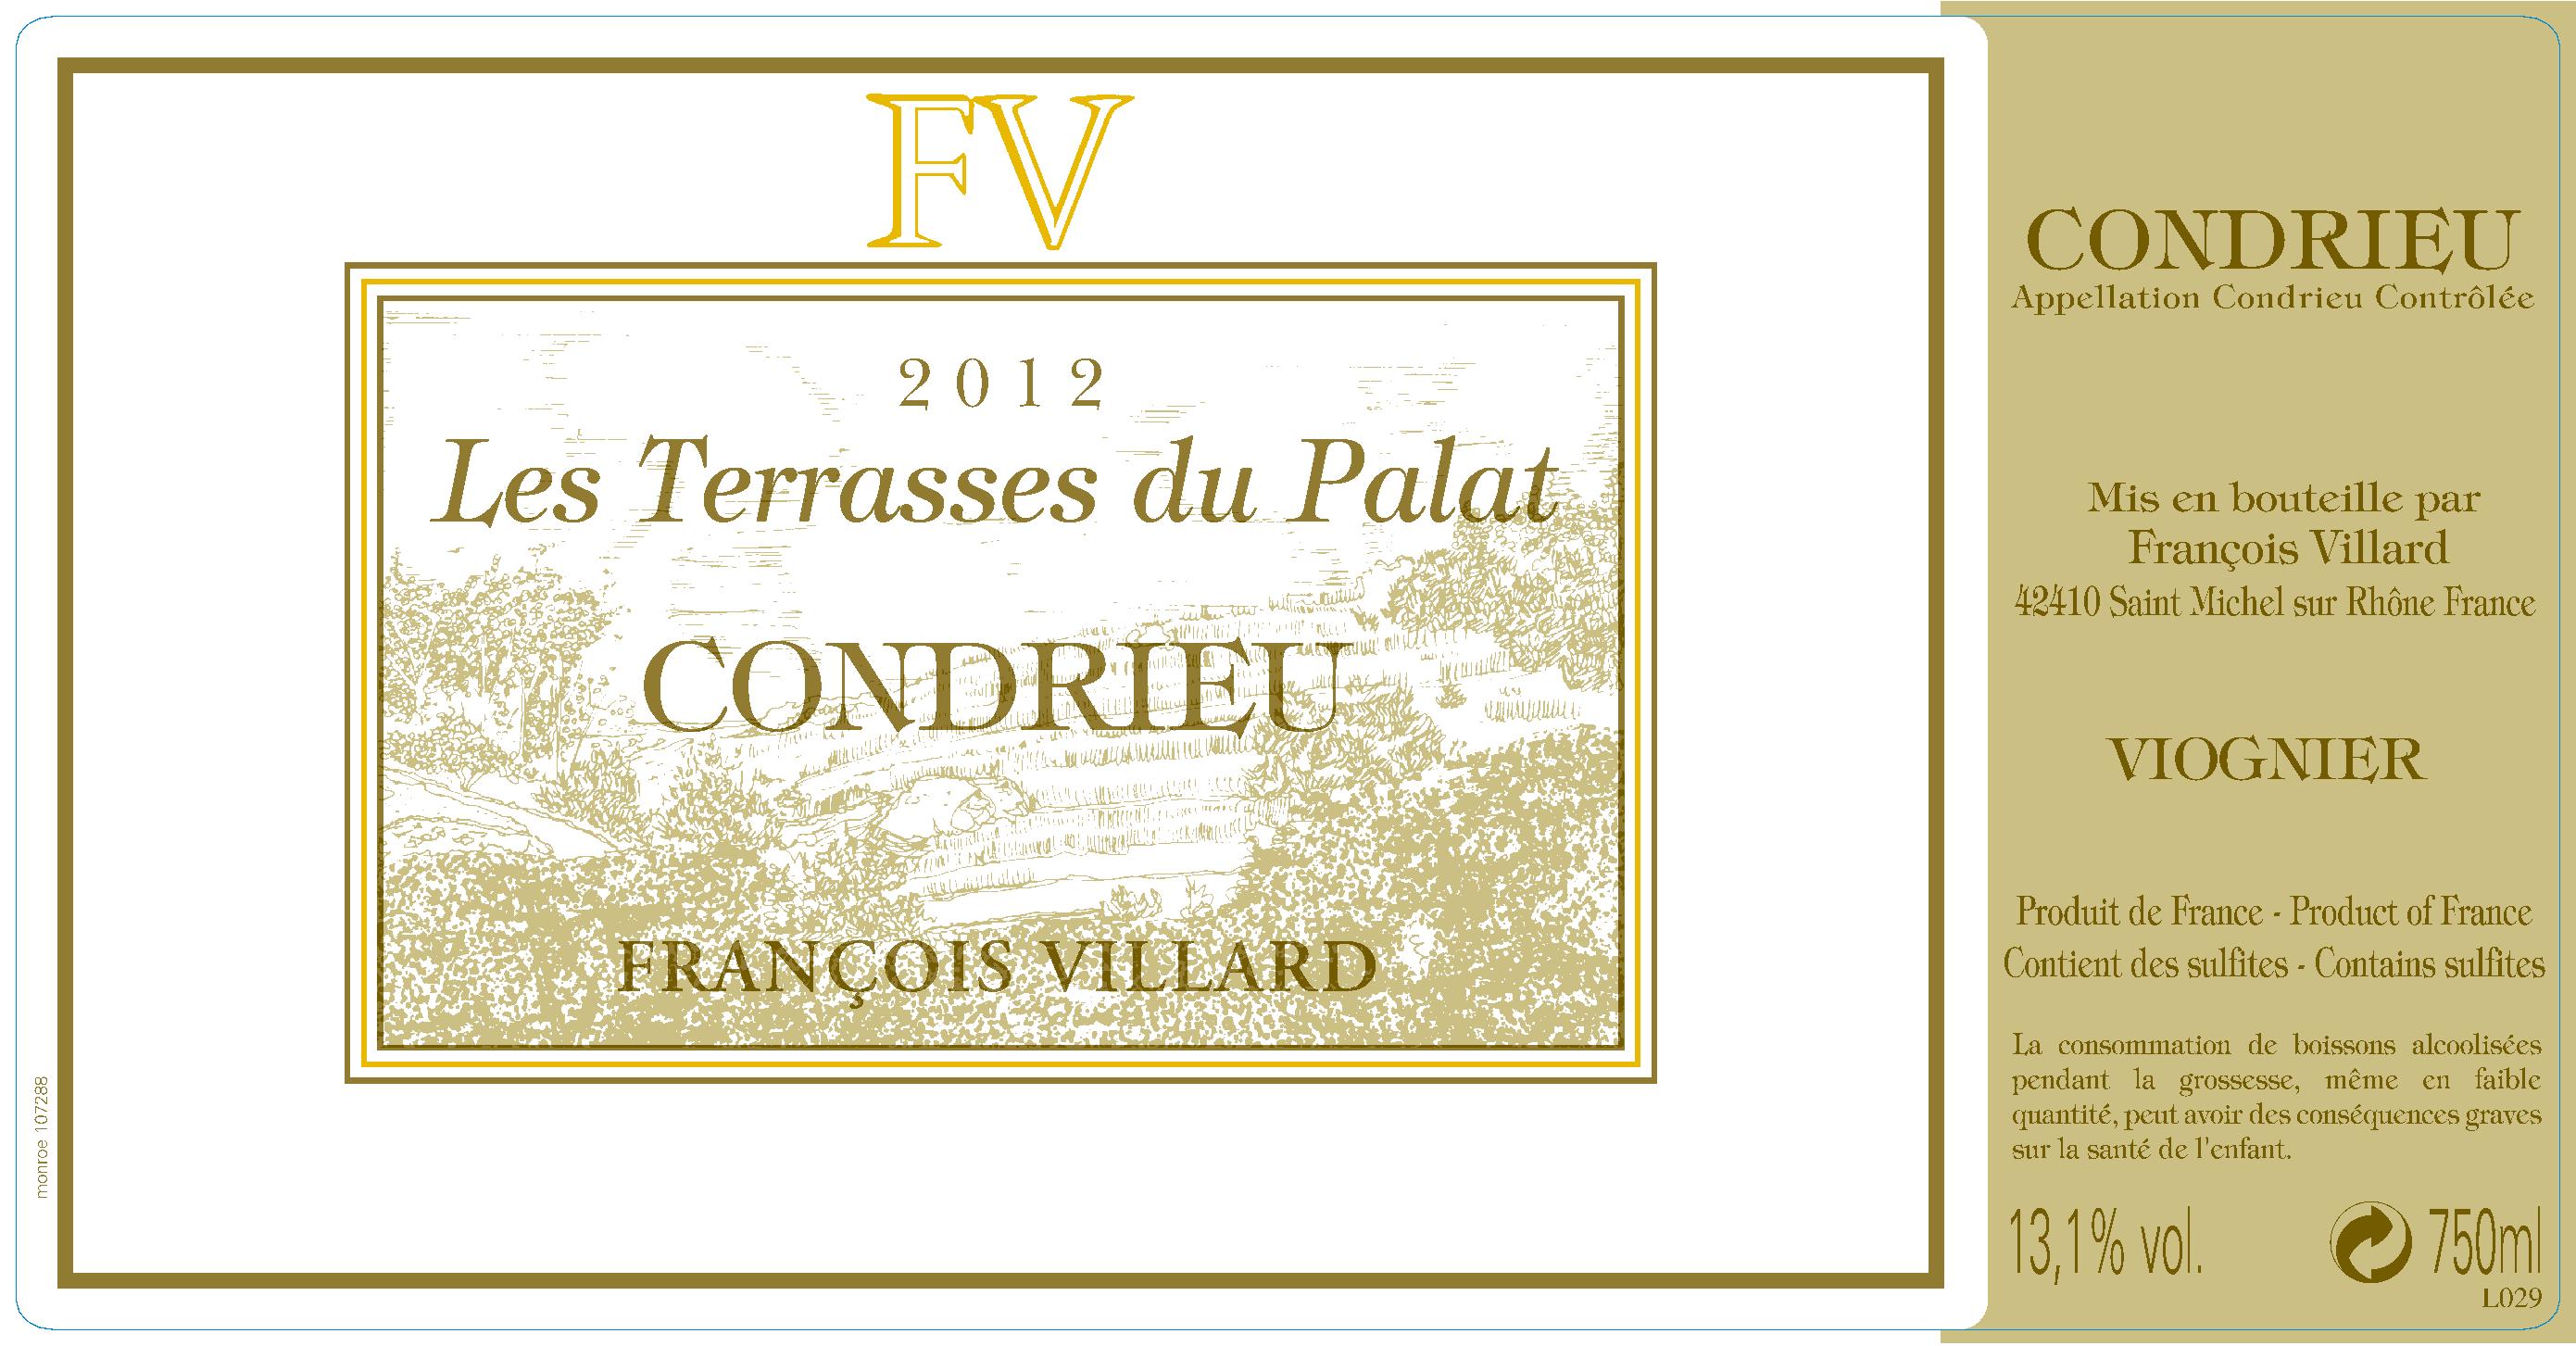 2012 Domaine Francois Villard Condrieu Les Terrasses du Palat - click image for full description